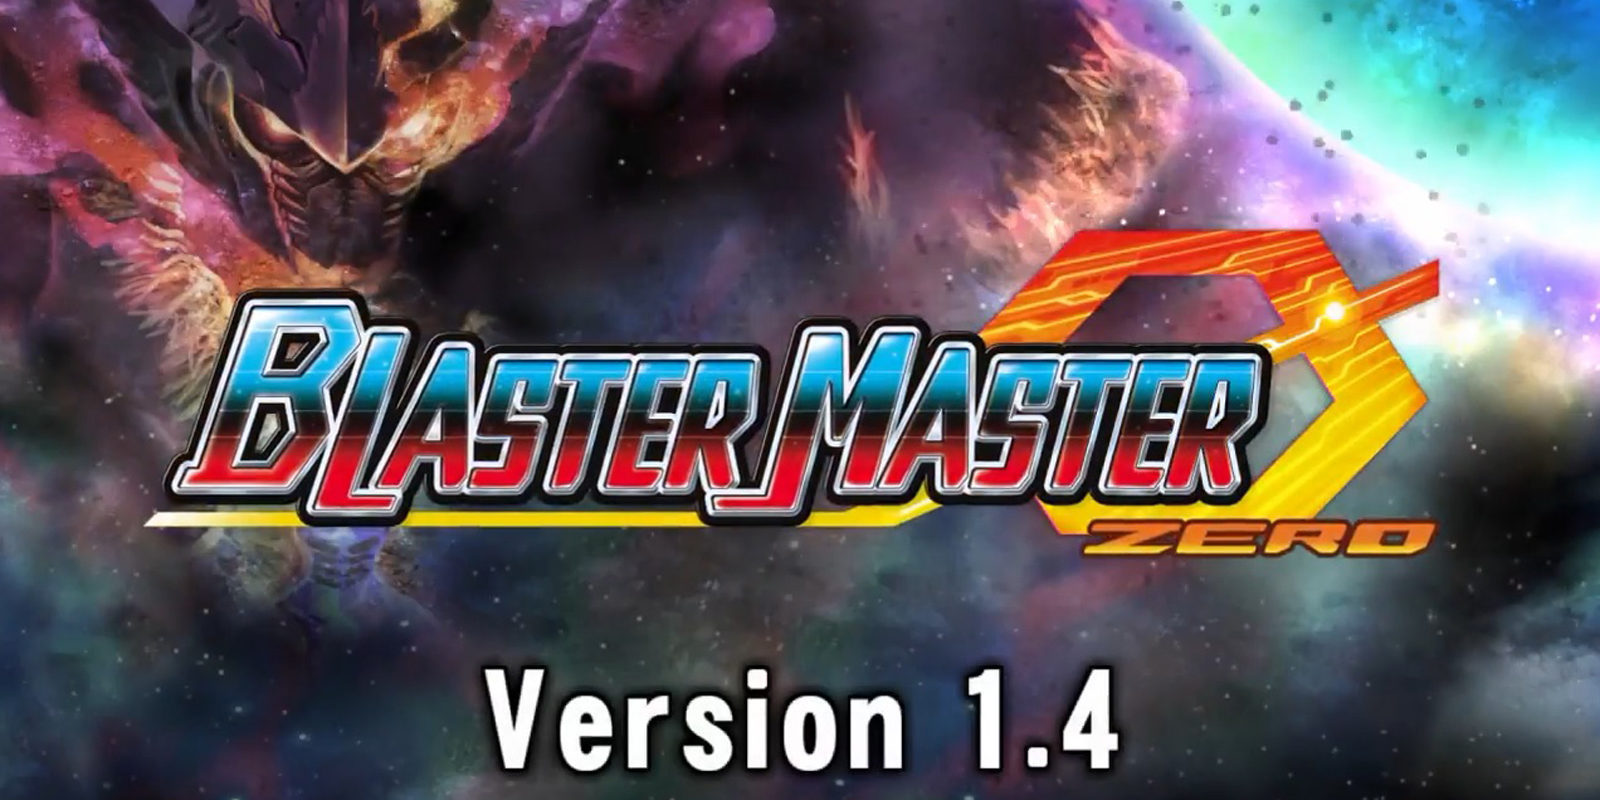 'Blaster Master Zero' añade nuevos modos de juego en su actualización 1.4